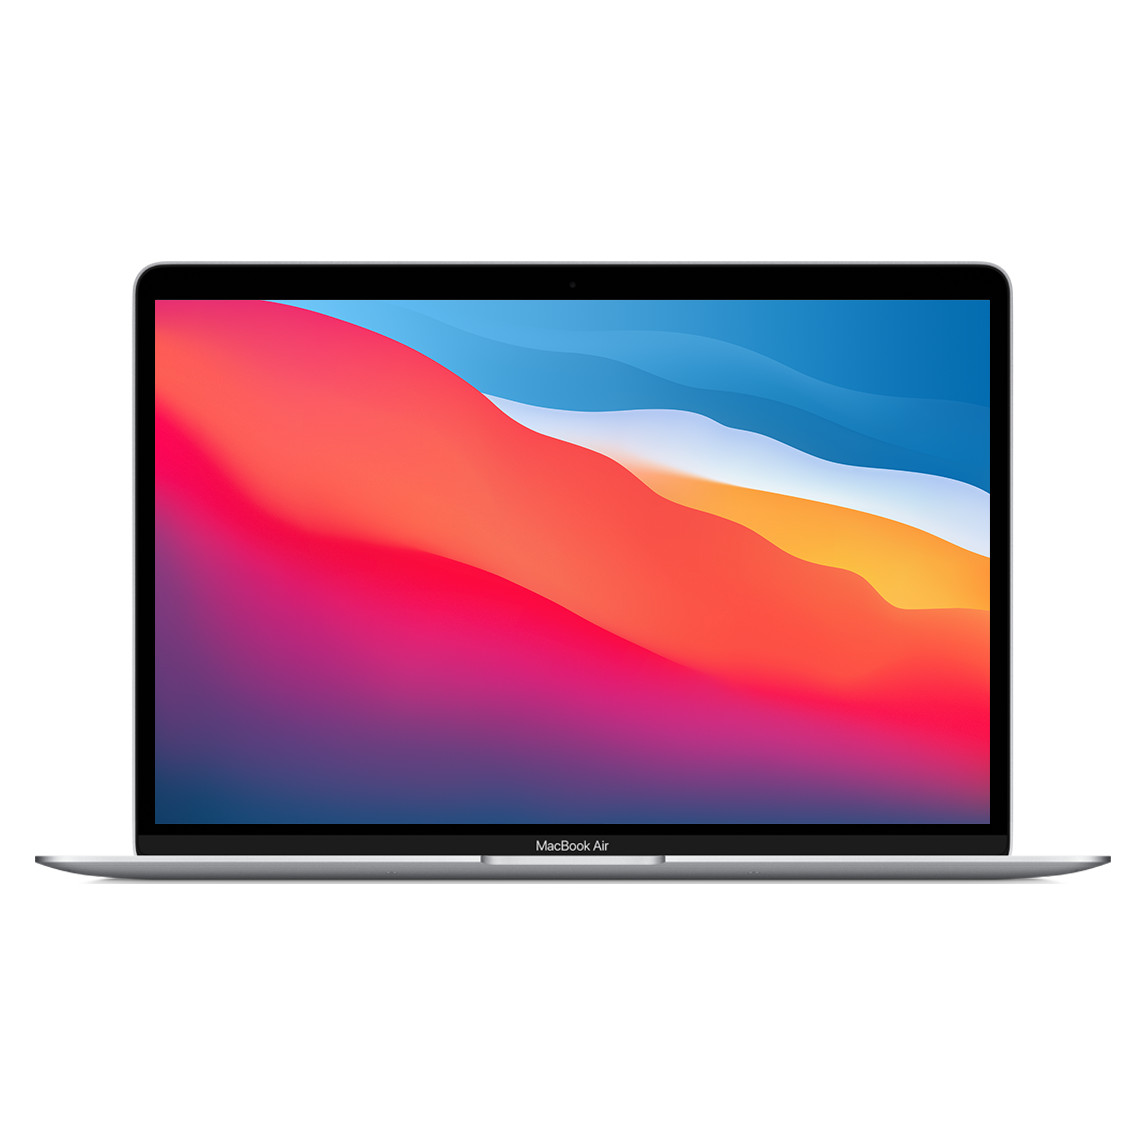 MacBook Air de 13,3 pouces, argent, ouvert, bordure mince, caméra FaceTime HD, contours arrondis